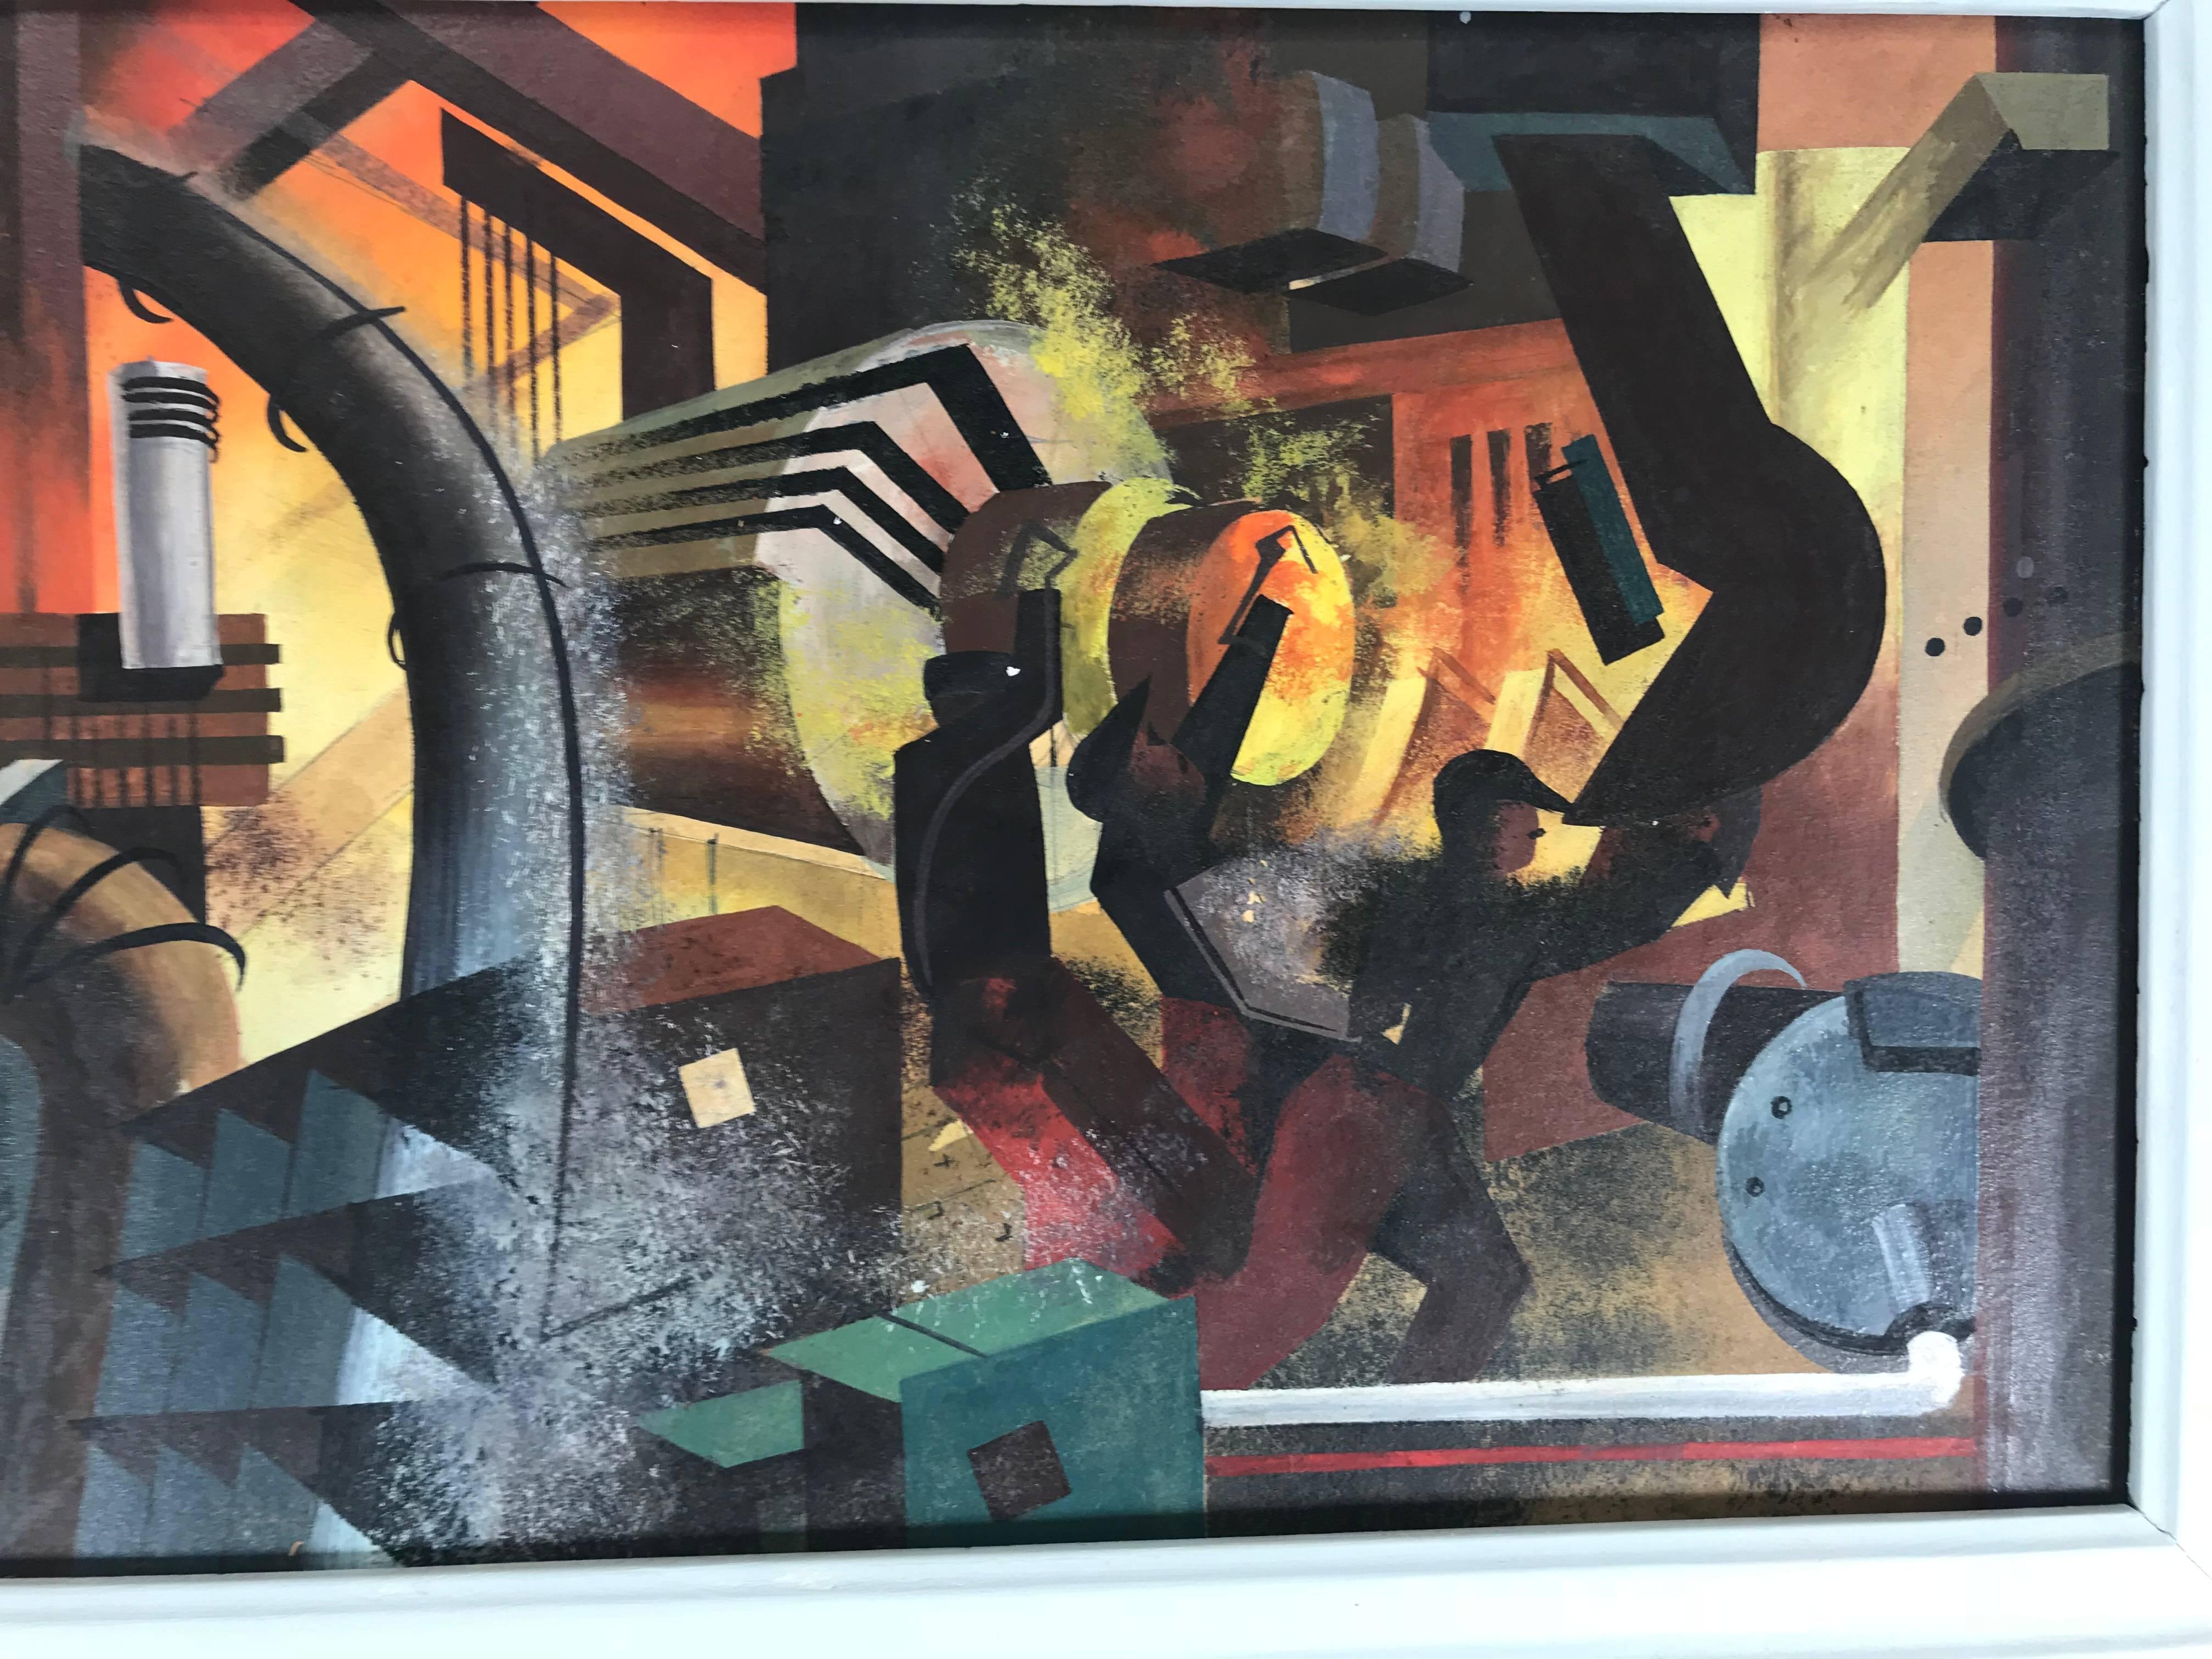 Peinture à l'huile d'industriel moderne bien exécutée, travailleurs d'usine futuristes. L'utilisation de la couleur, de la texture et de l'espace est étonnante. Artiste inconnu. Mark Kostabi rencontre Fernand Leger.